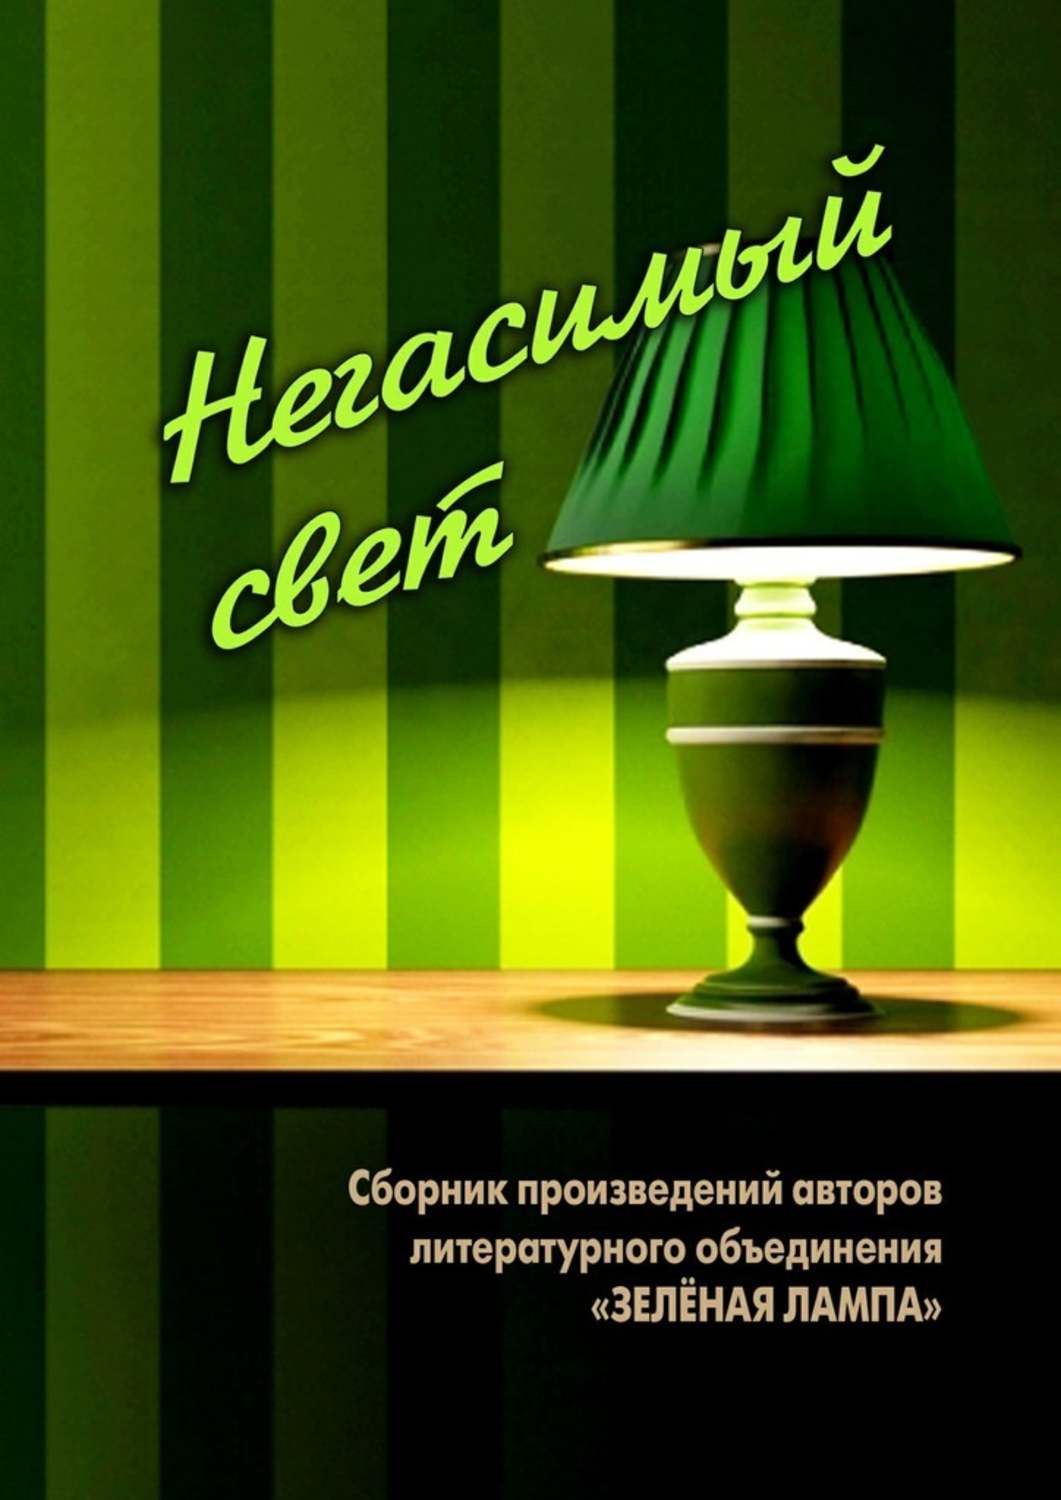 Грин зеленые лампы. Зелёная лампа Грин. Грин зеленая лампа книга. Литературное объединение зеленая лампа.